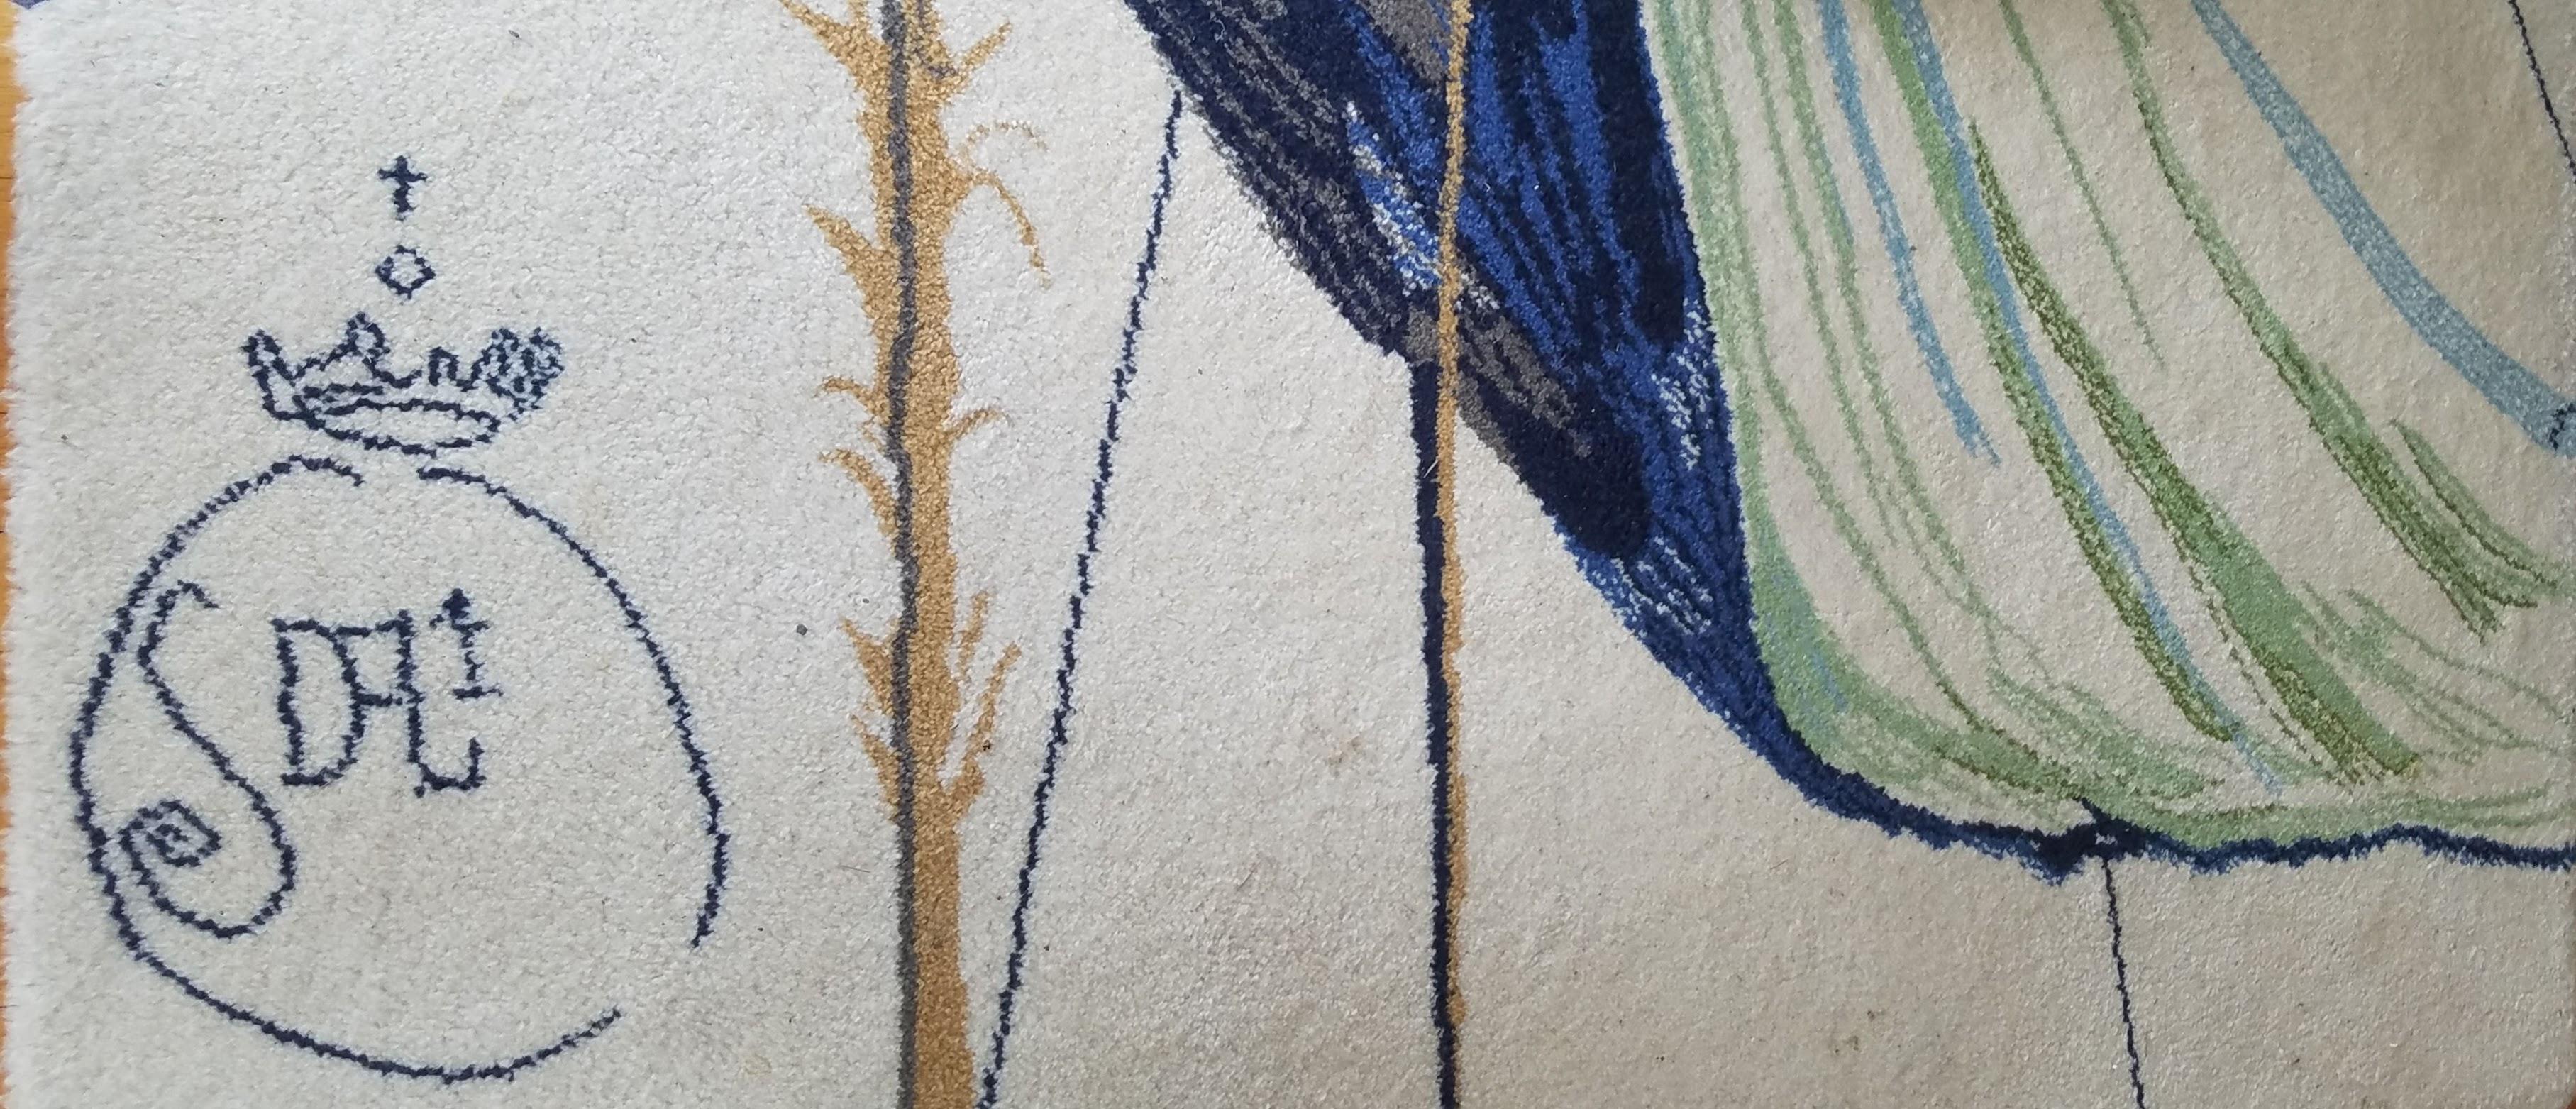 Un tapis moderniste en laine rya d'Ege Axminster A/S créé au Danemark selon les normes les plus élevées. L'image est inspirée d'une peinture de Salvador Dali (1904-1989) de 1969 interprétant l'histoire classique de Lewis Carroll, Alice au pays des